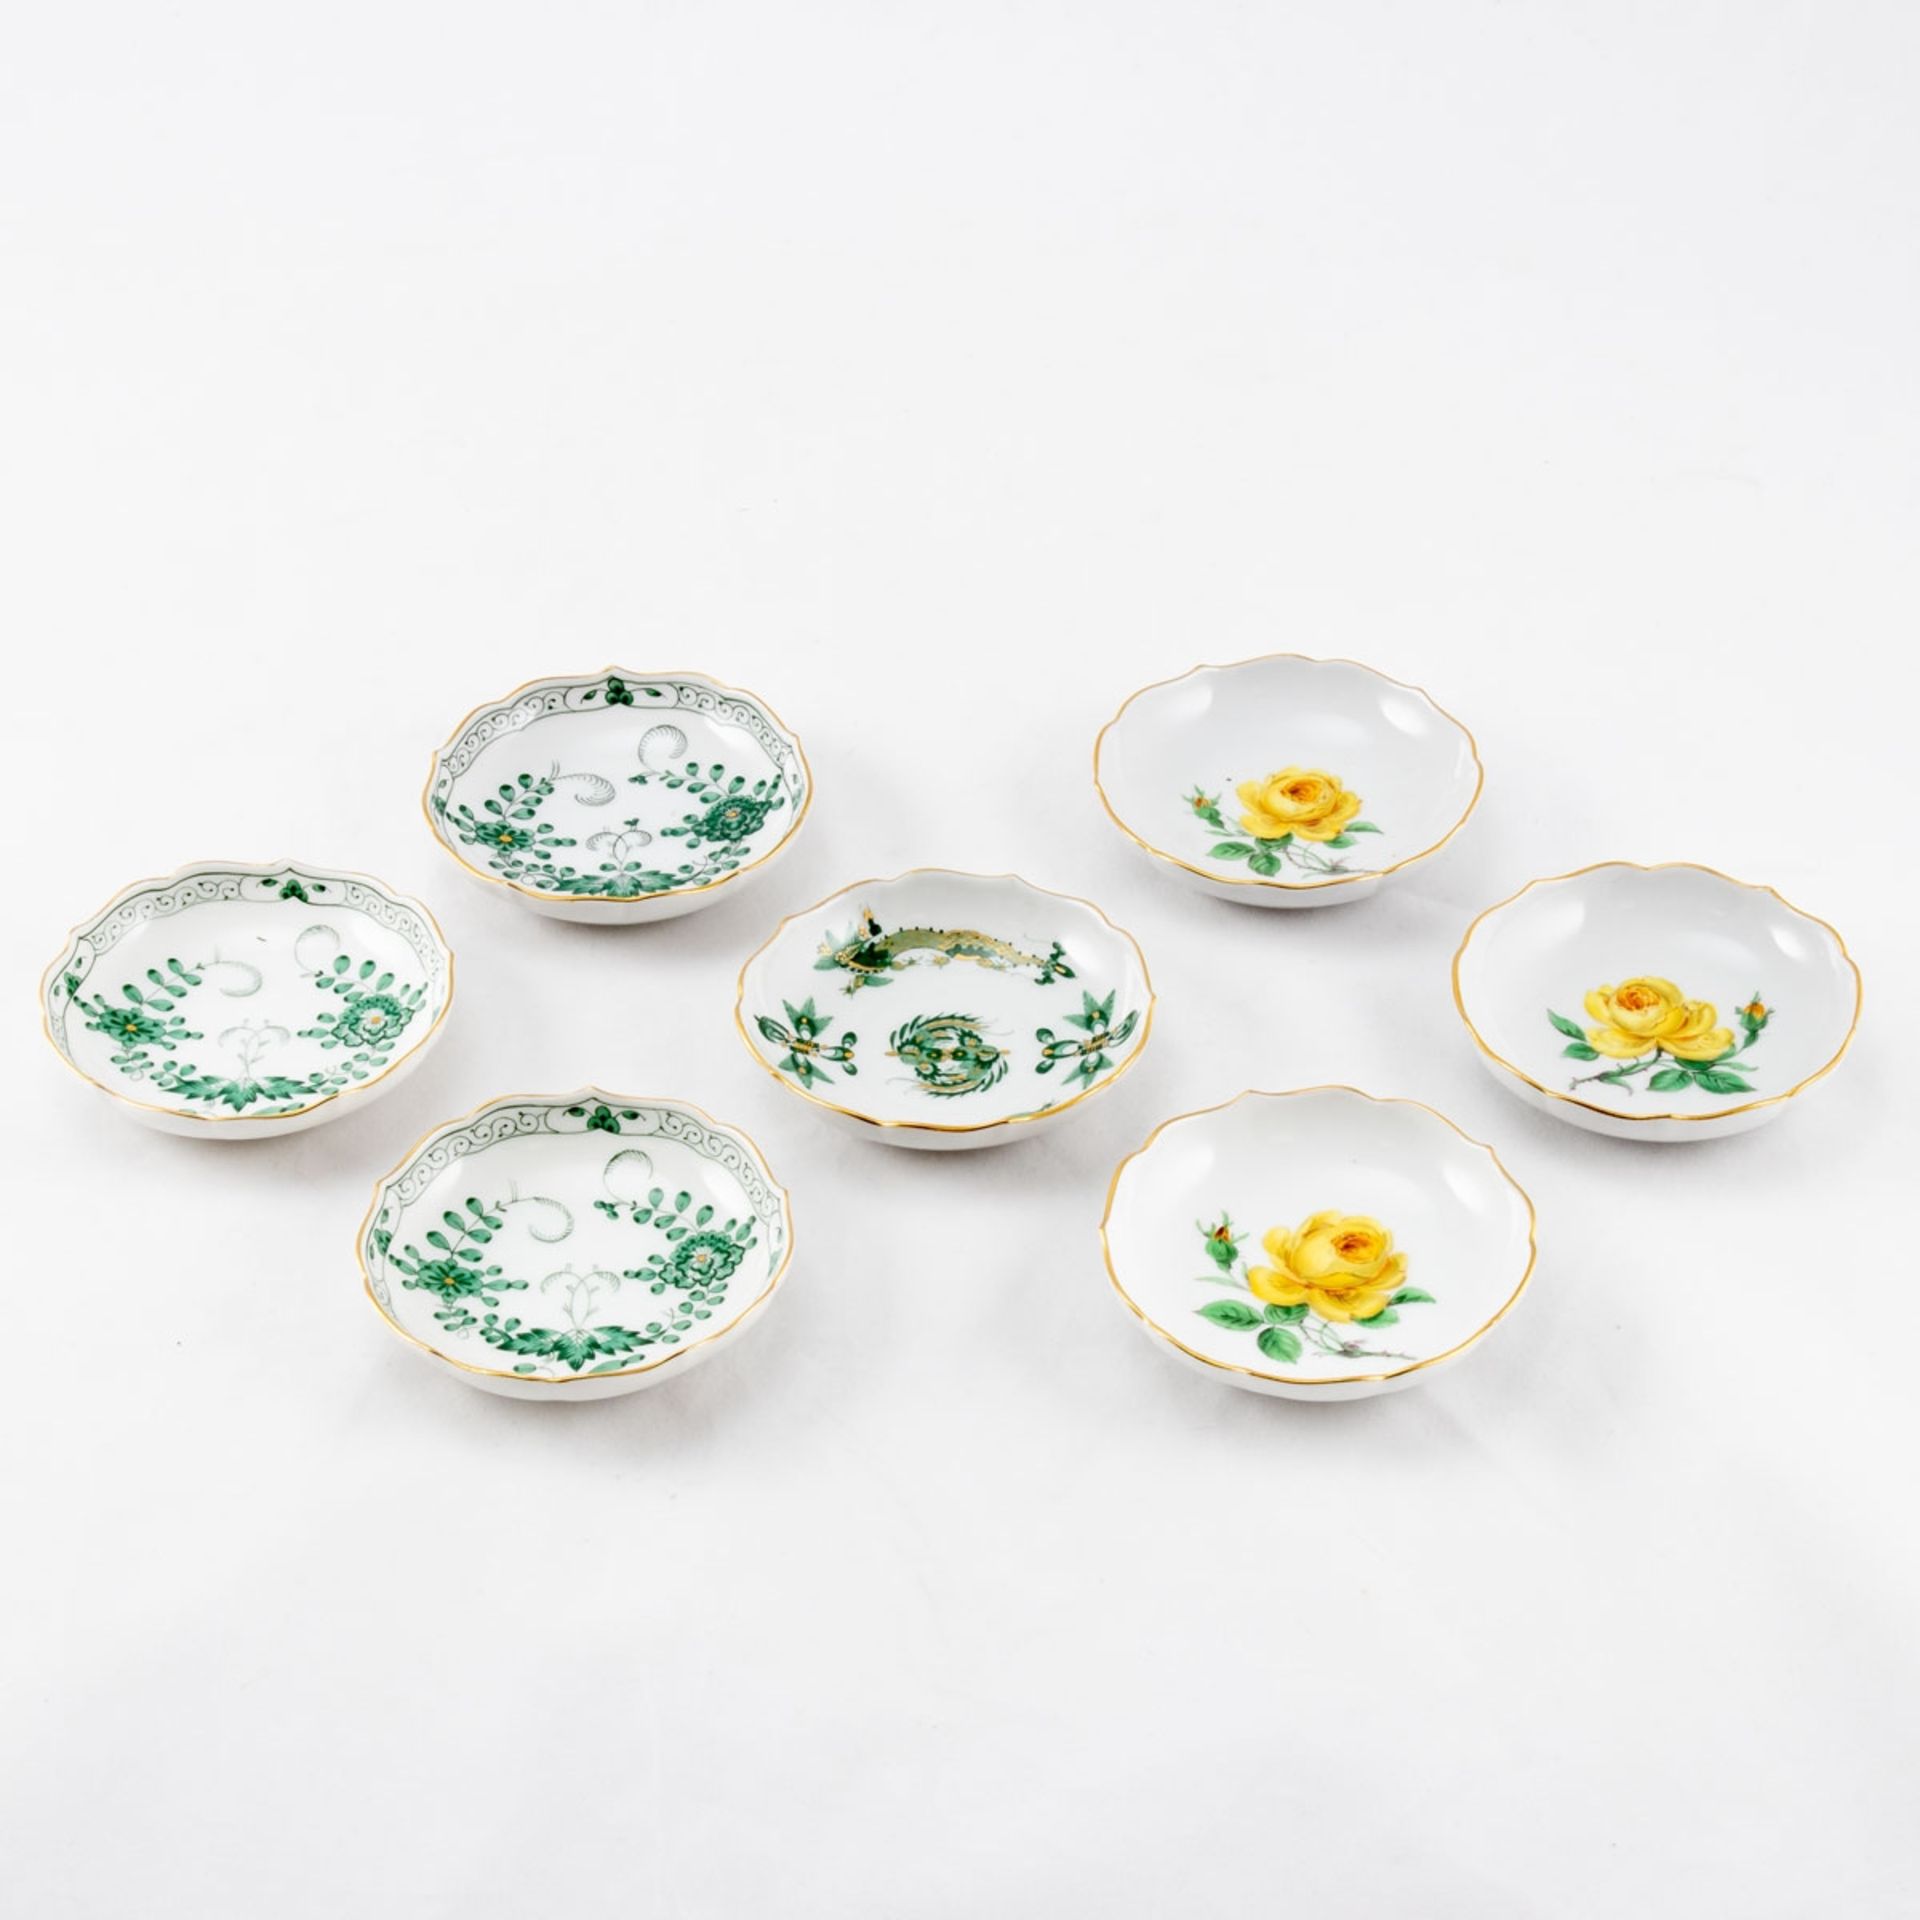 7 Schälchen Staatliche Porzellan Manufaktur, Meissen ab 1947. - Gelbe Rose, Indisch grün un